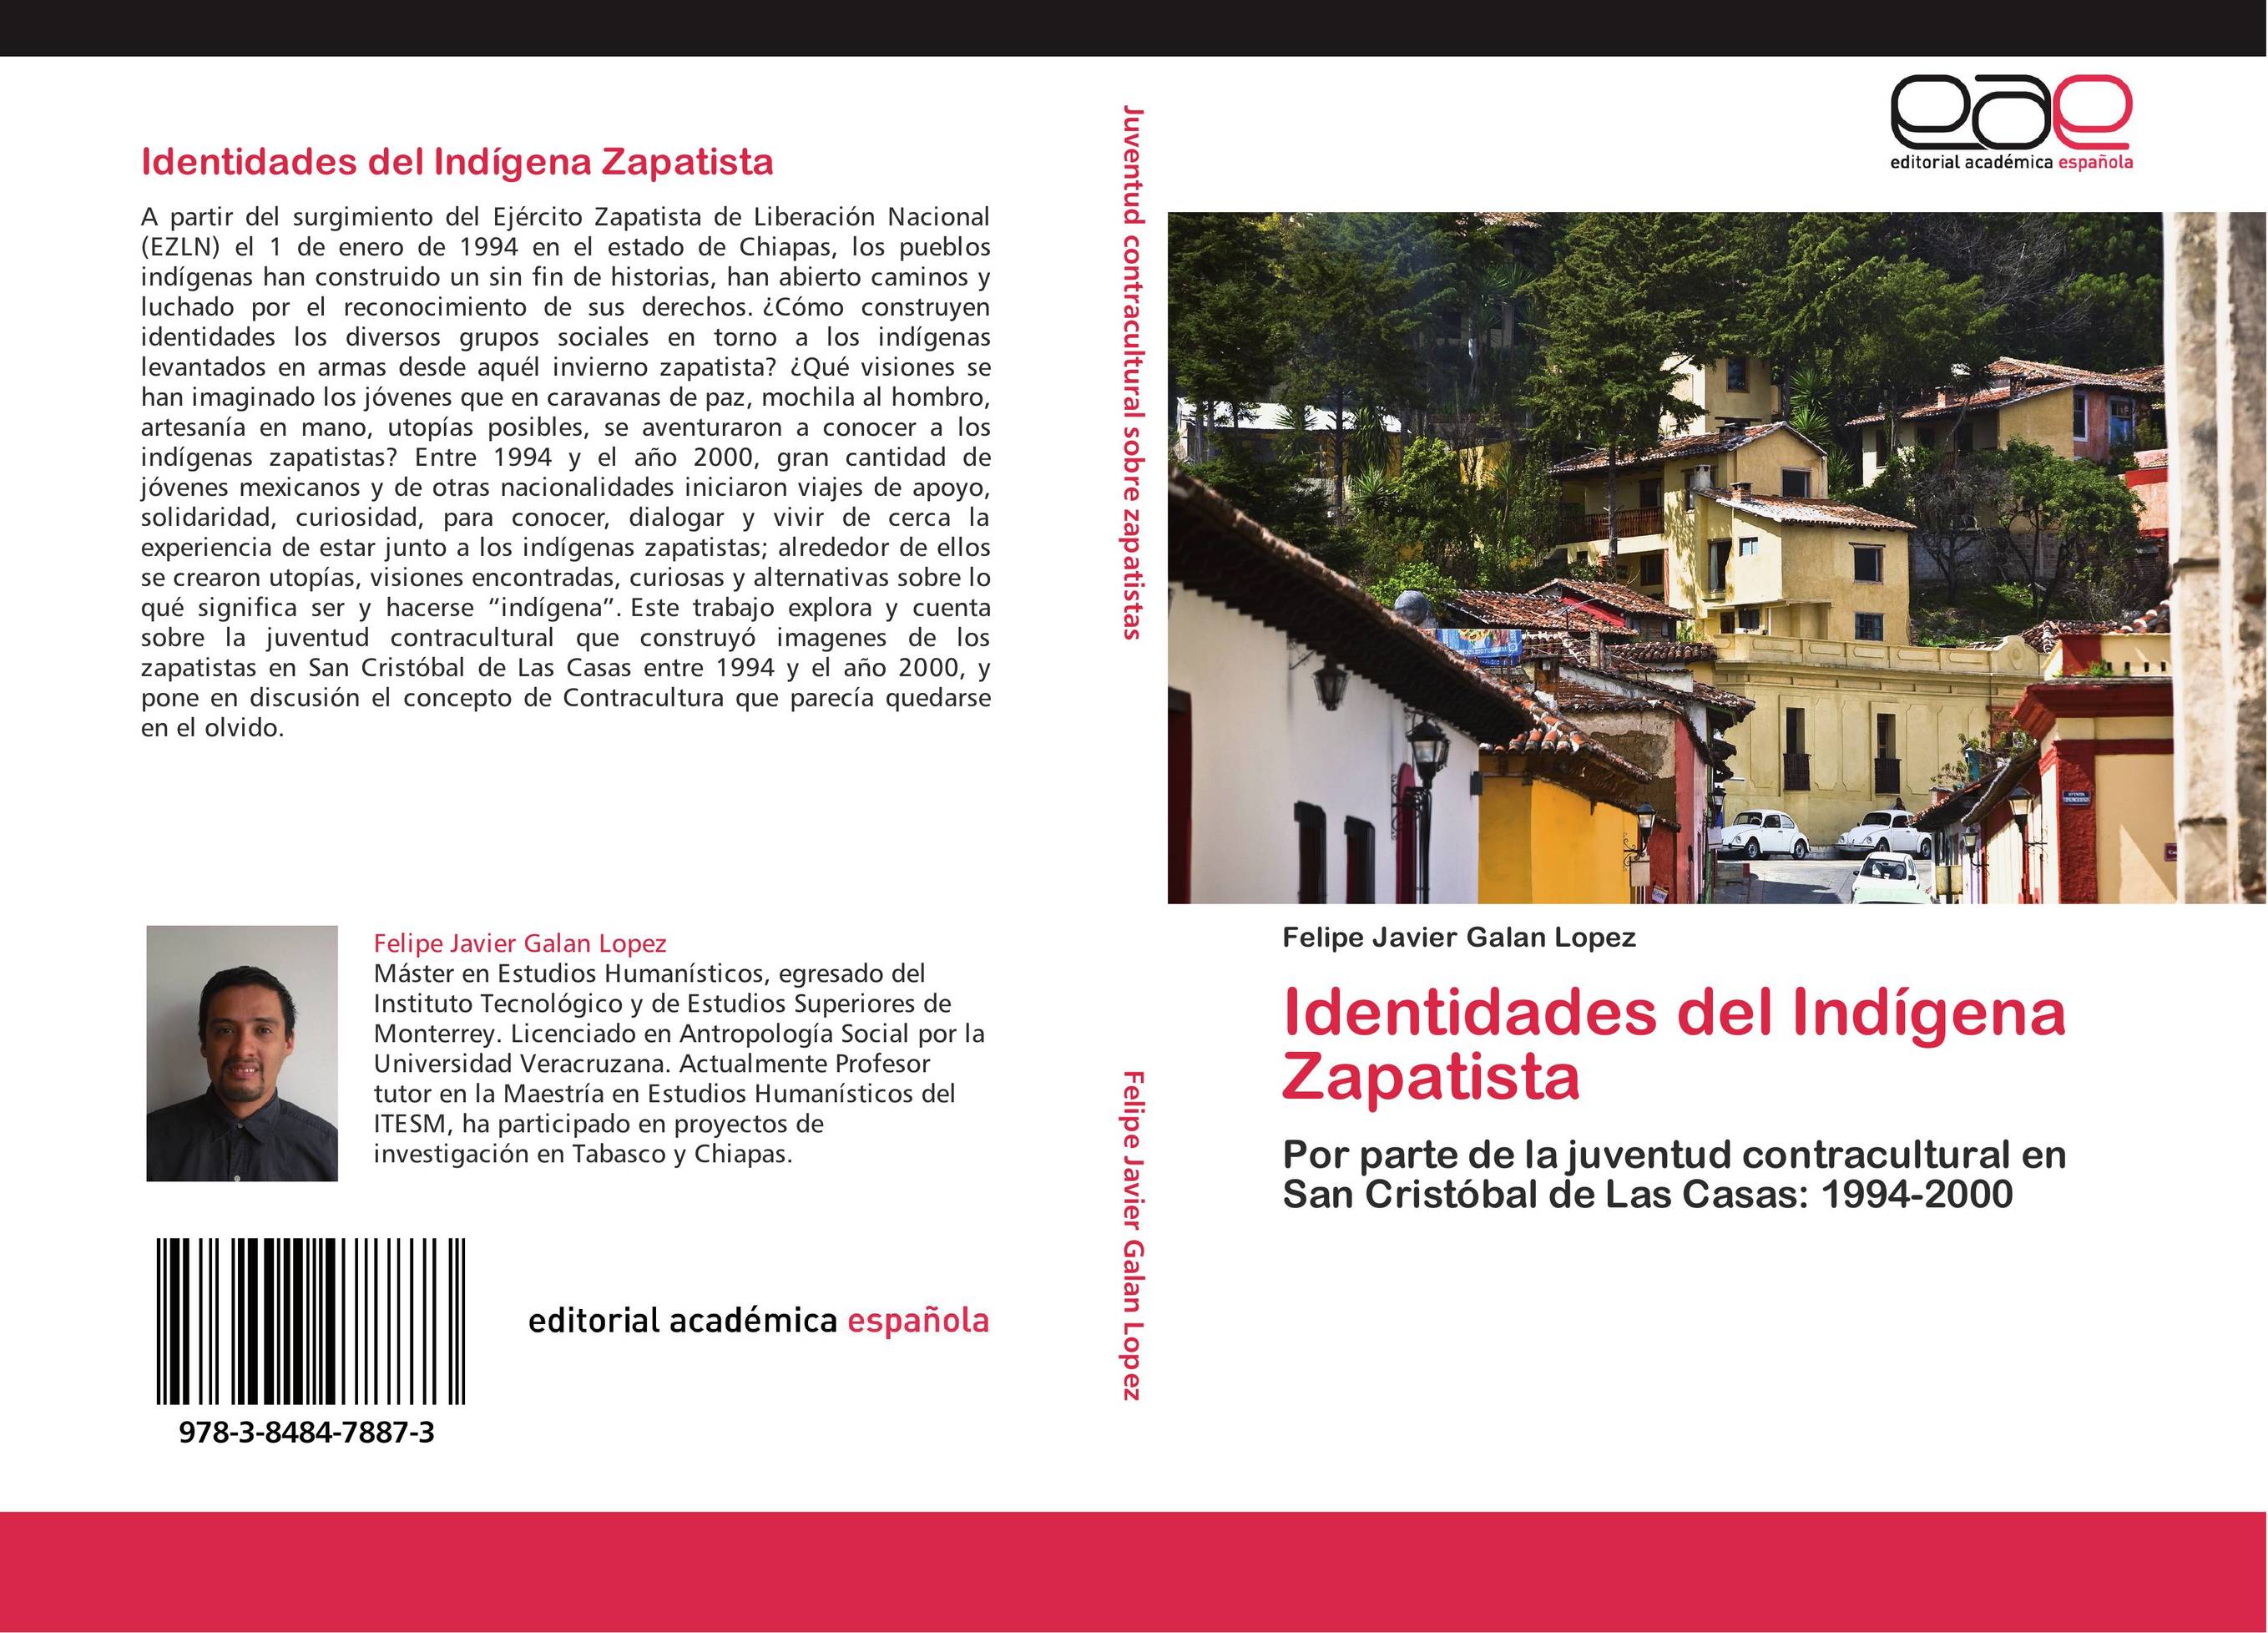 Identidades del Indígena Zapatista